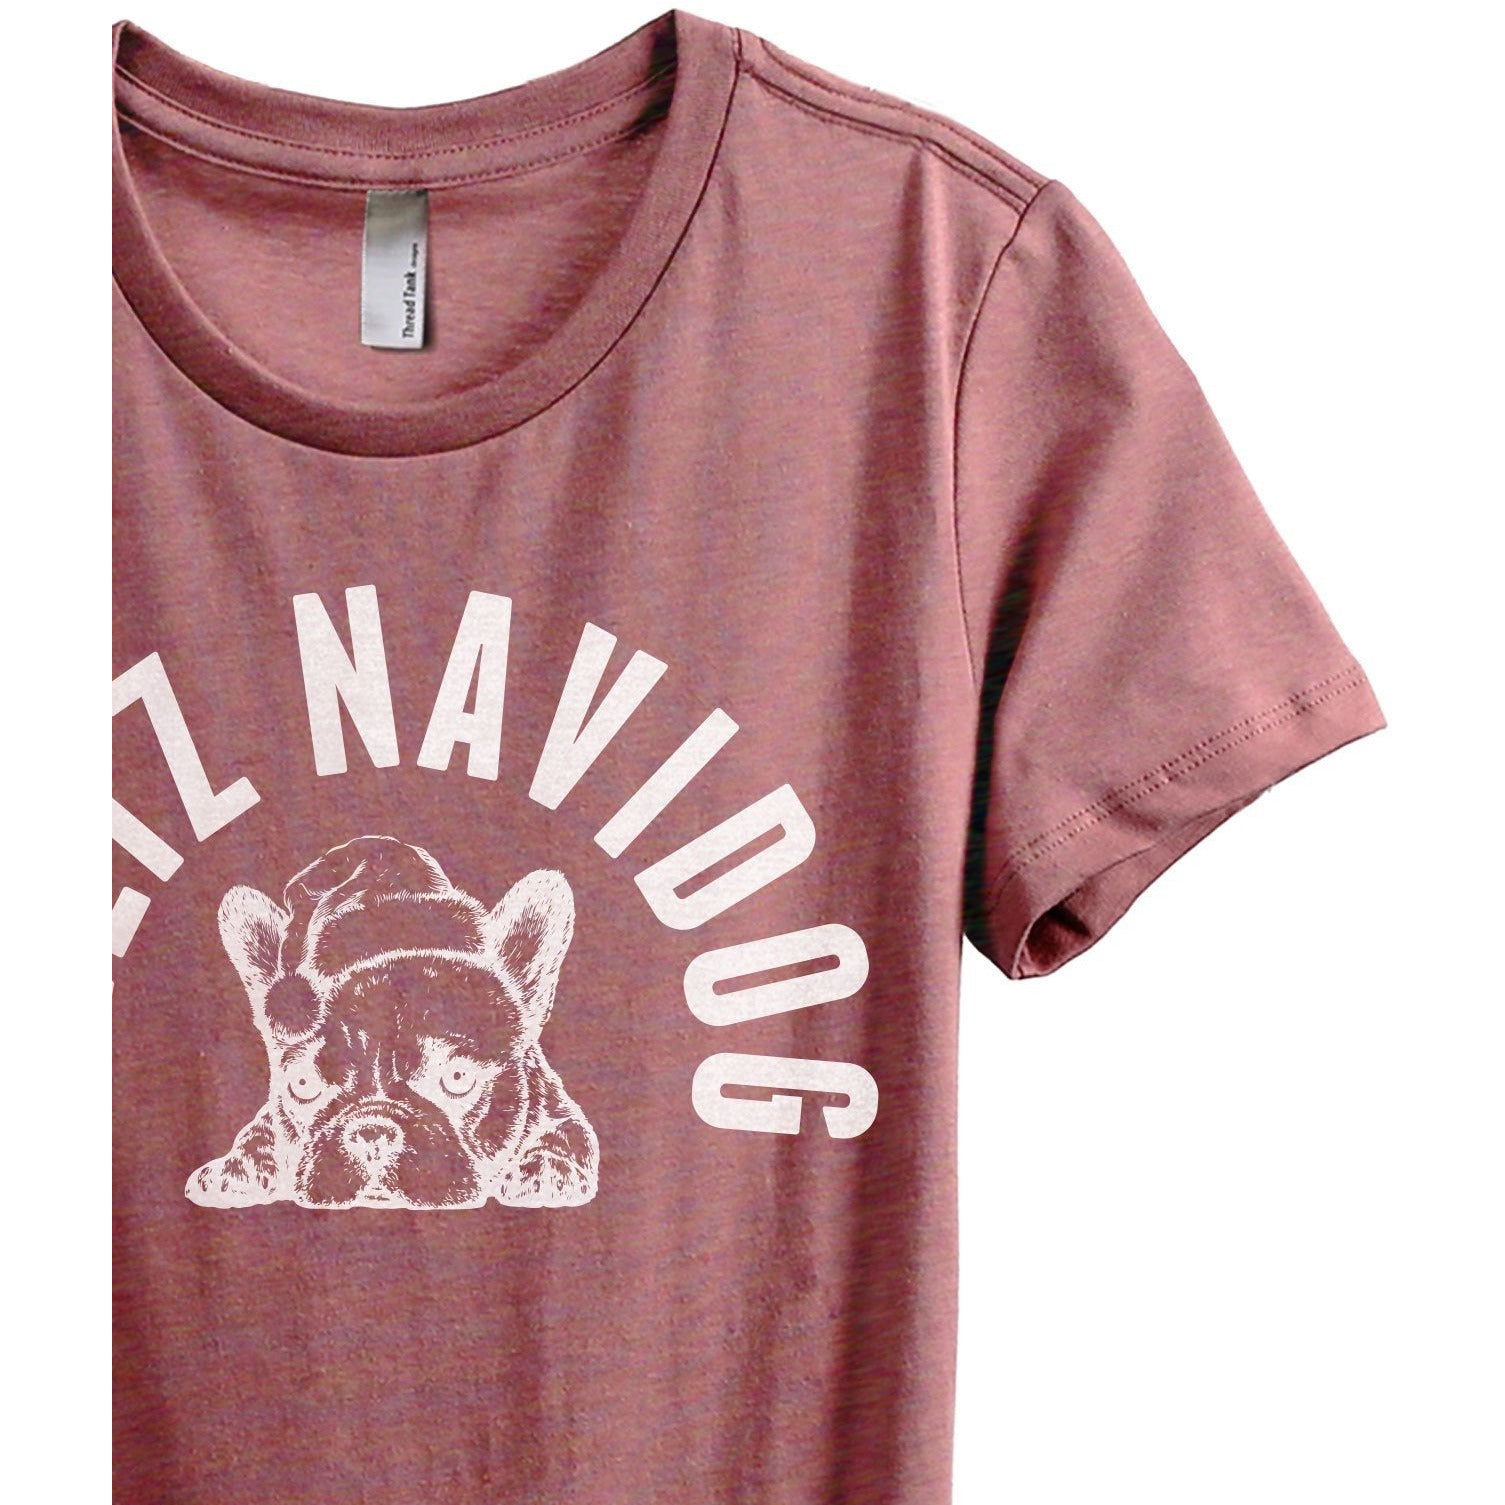 Feliz Navidog Women's Relaxed Crewneck T-Shirt Top Tee Heather Rouge Zoom Details
